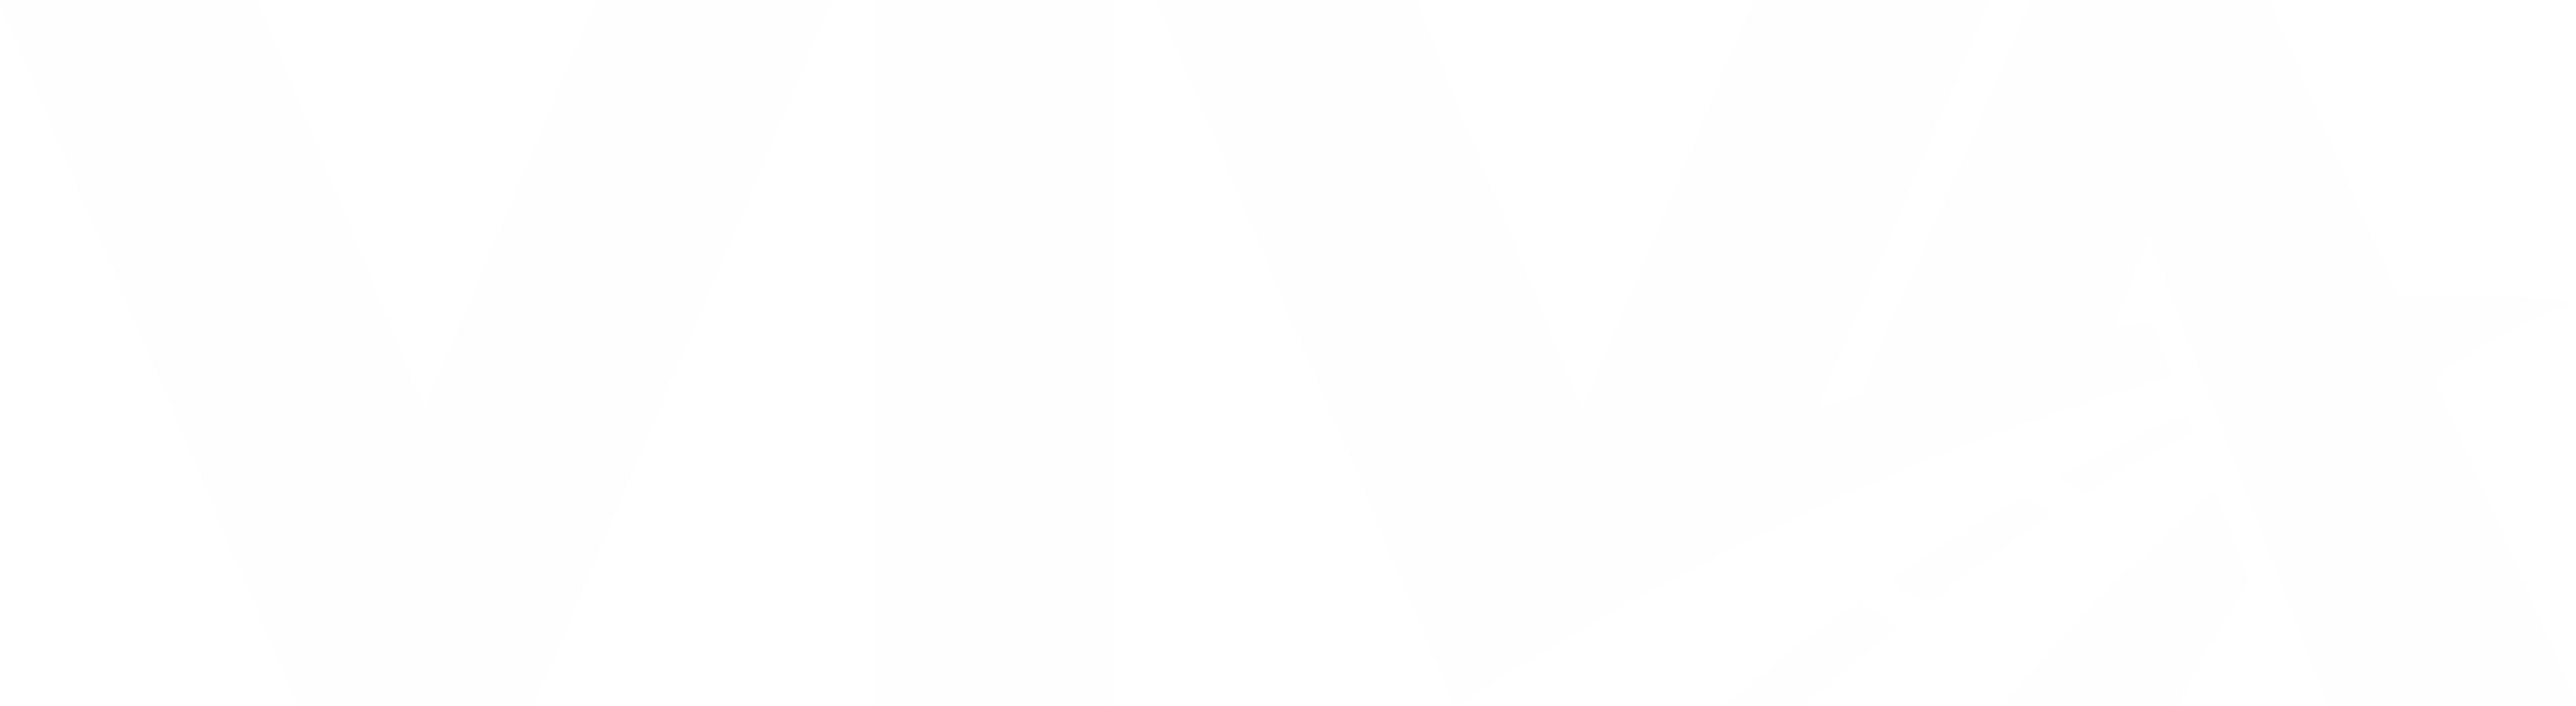 Viva Short White Logo